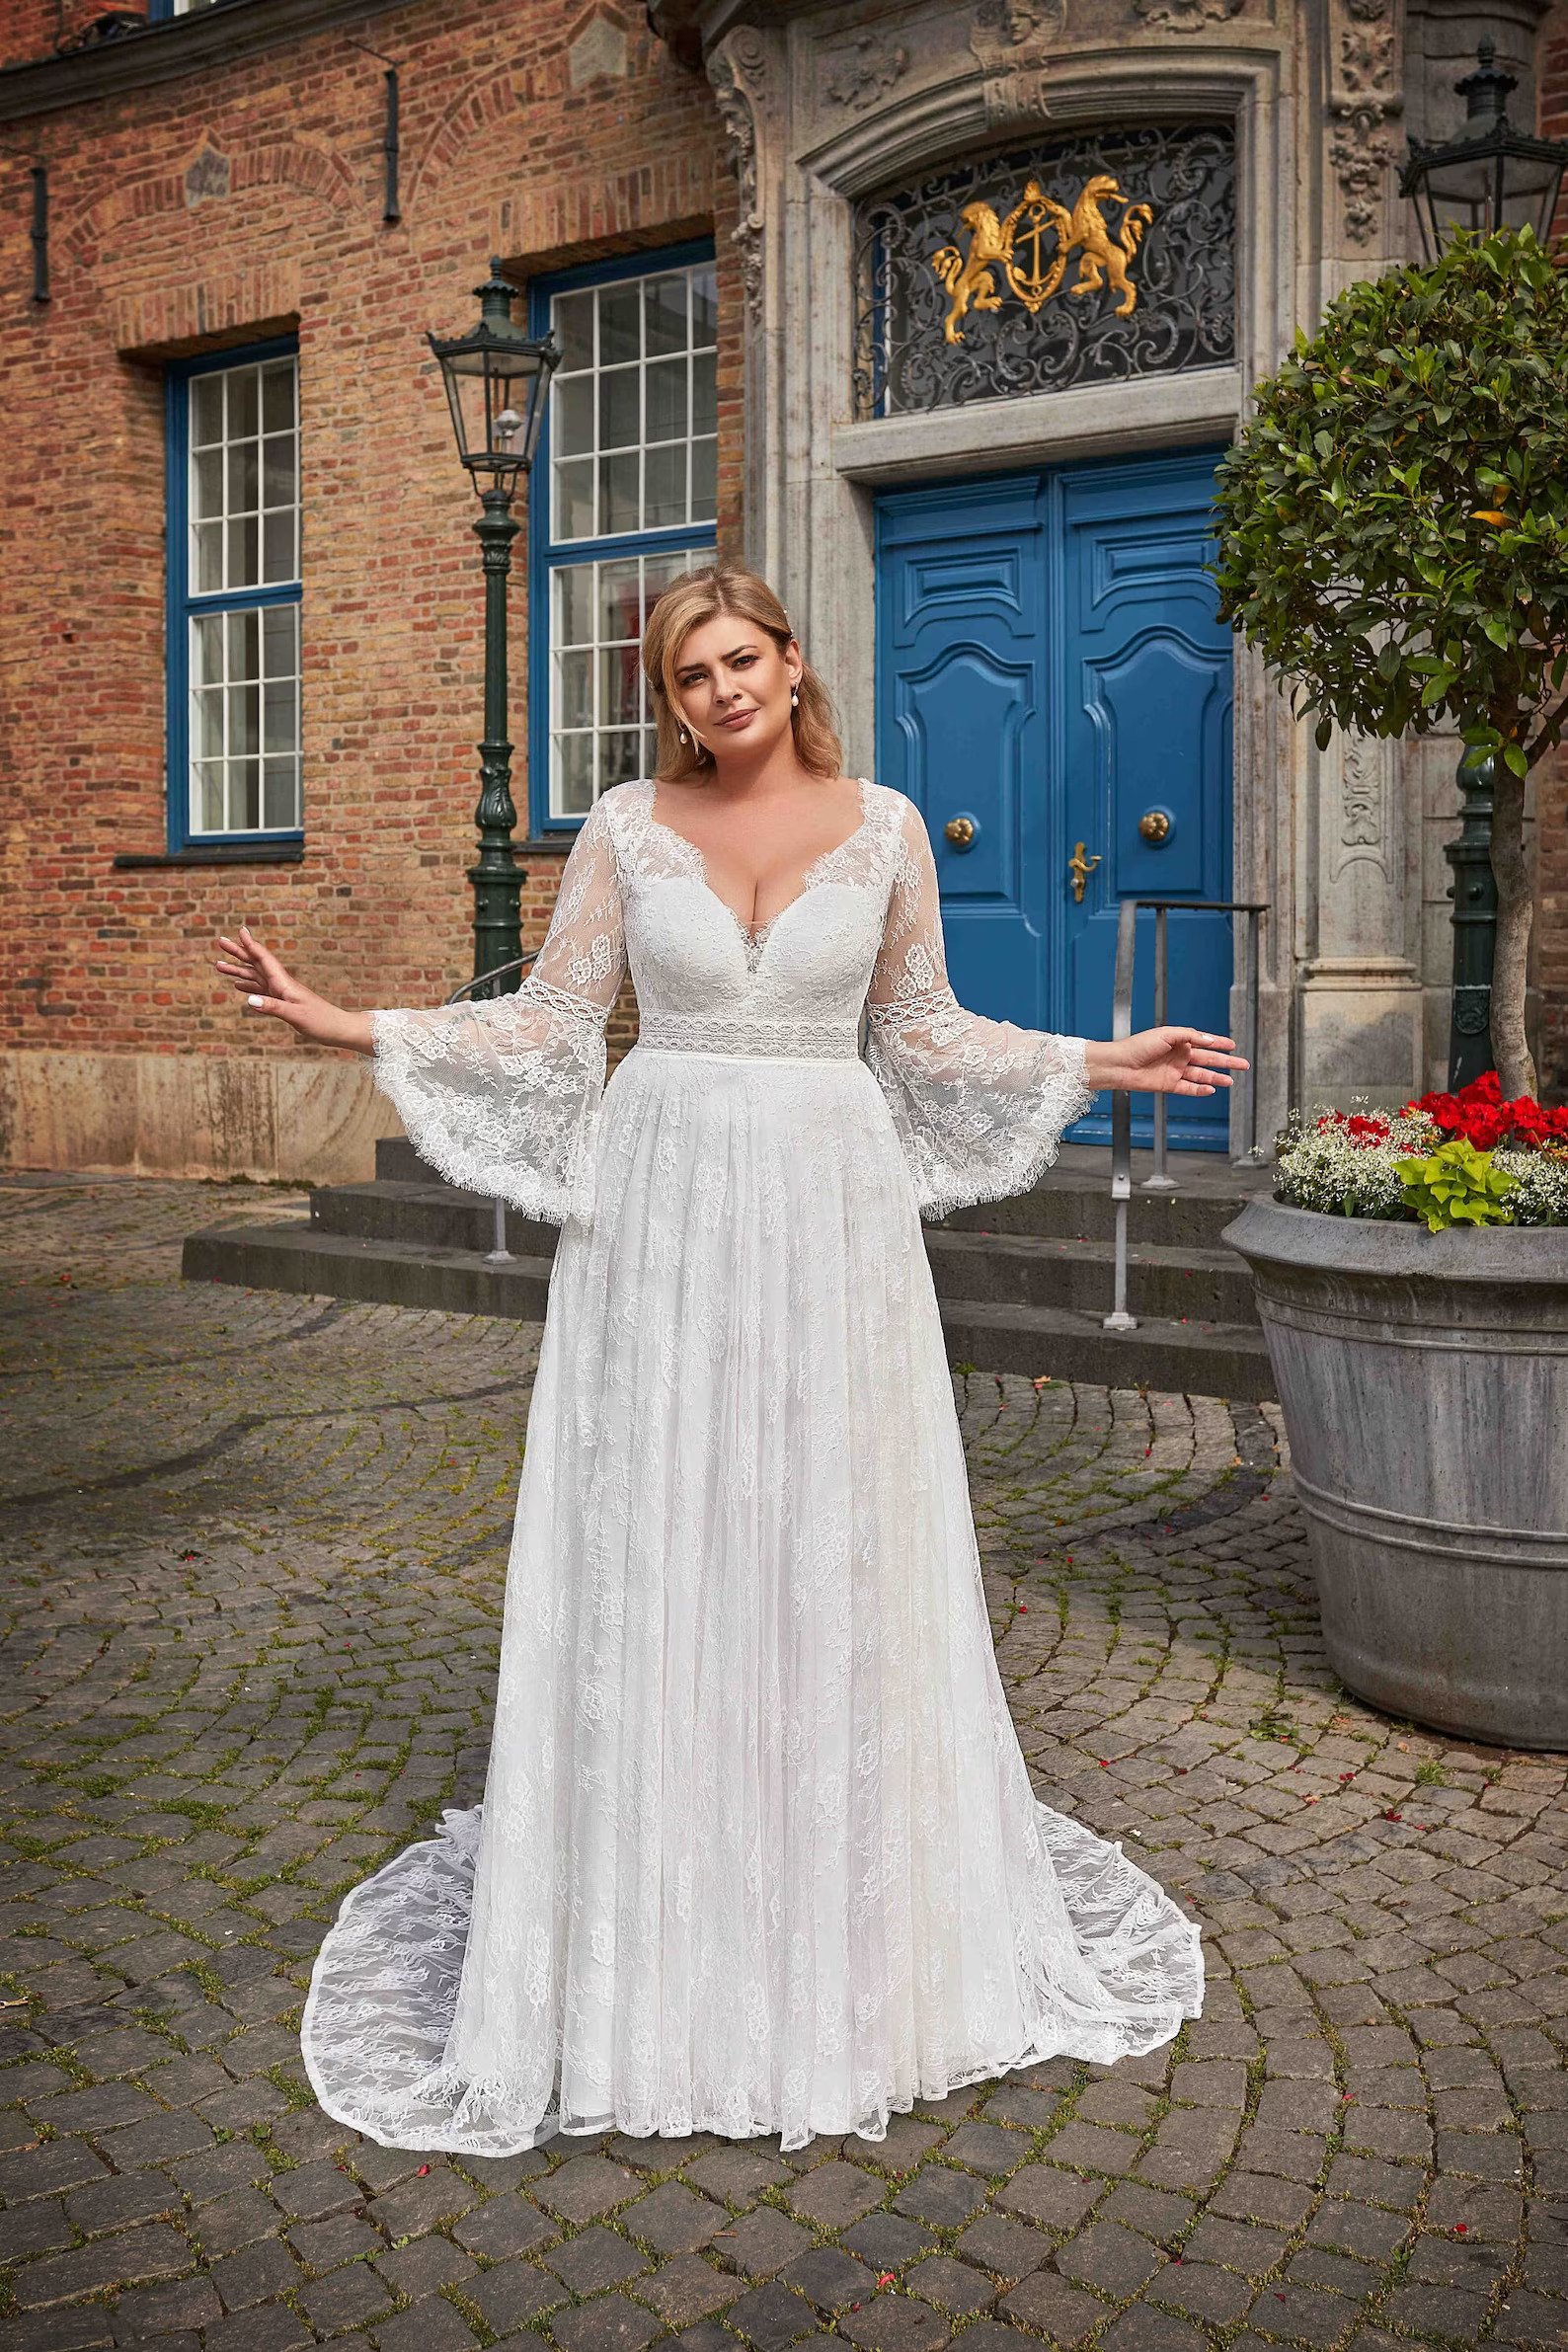 Plus Size Wedding Dresses - Leah S Designs bridal sizes 6 to 32